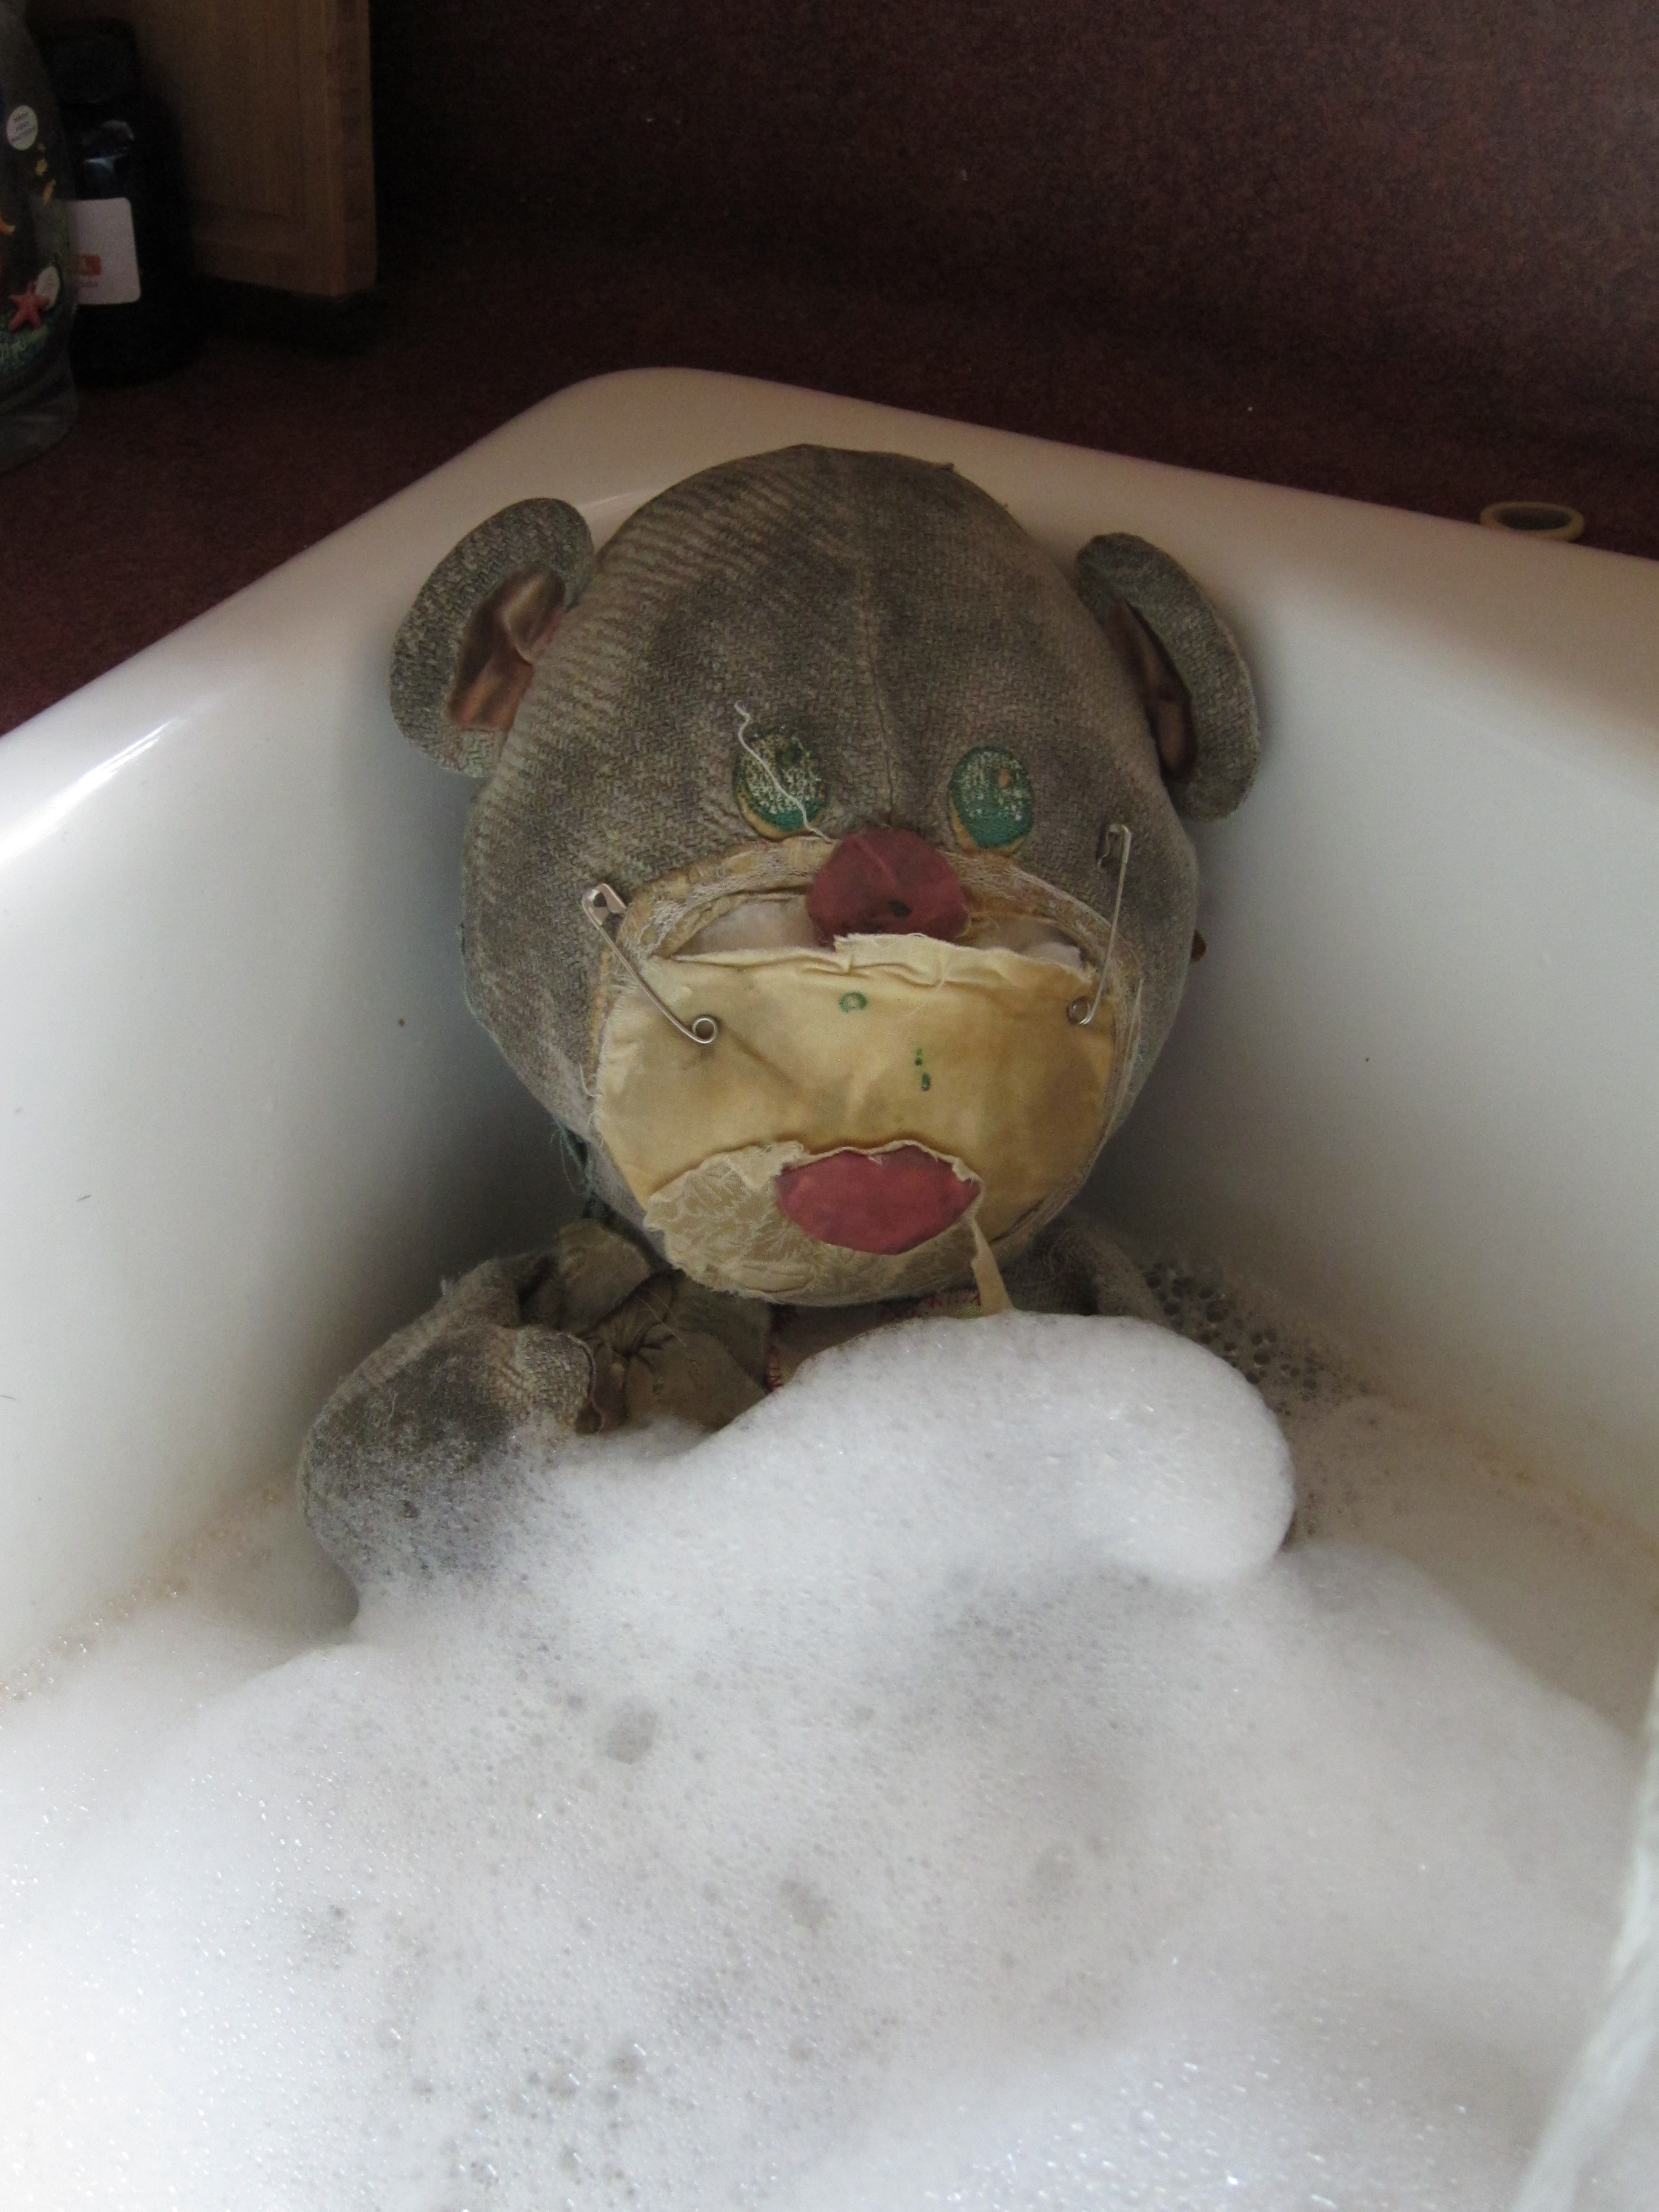 Fluffy in the Bath